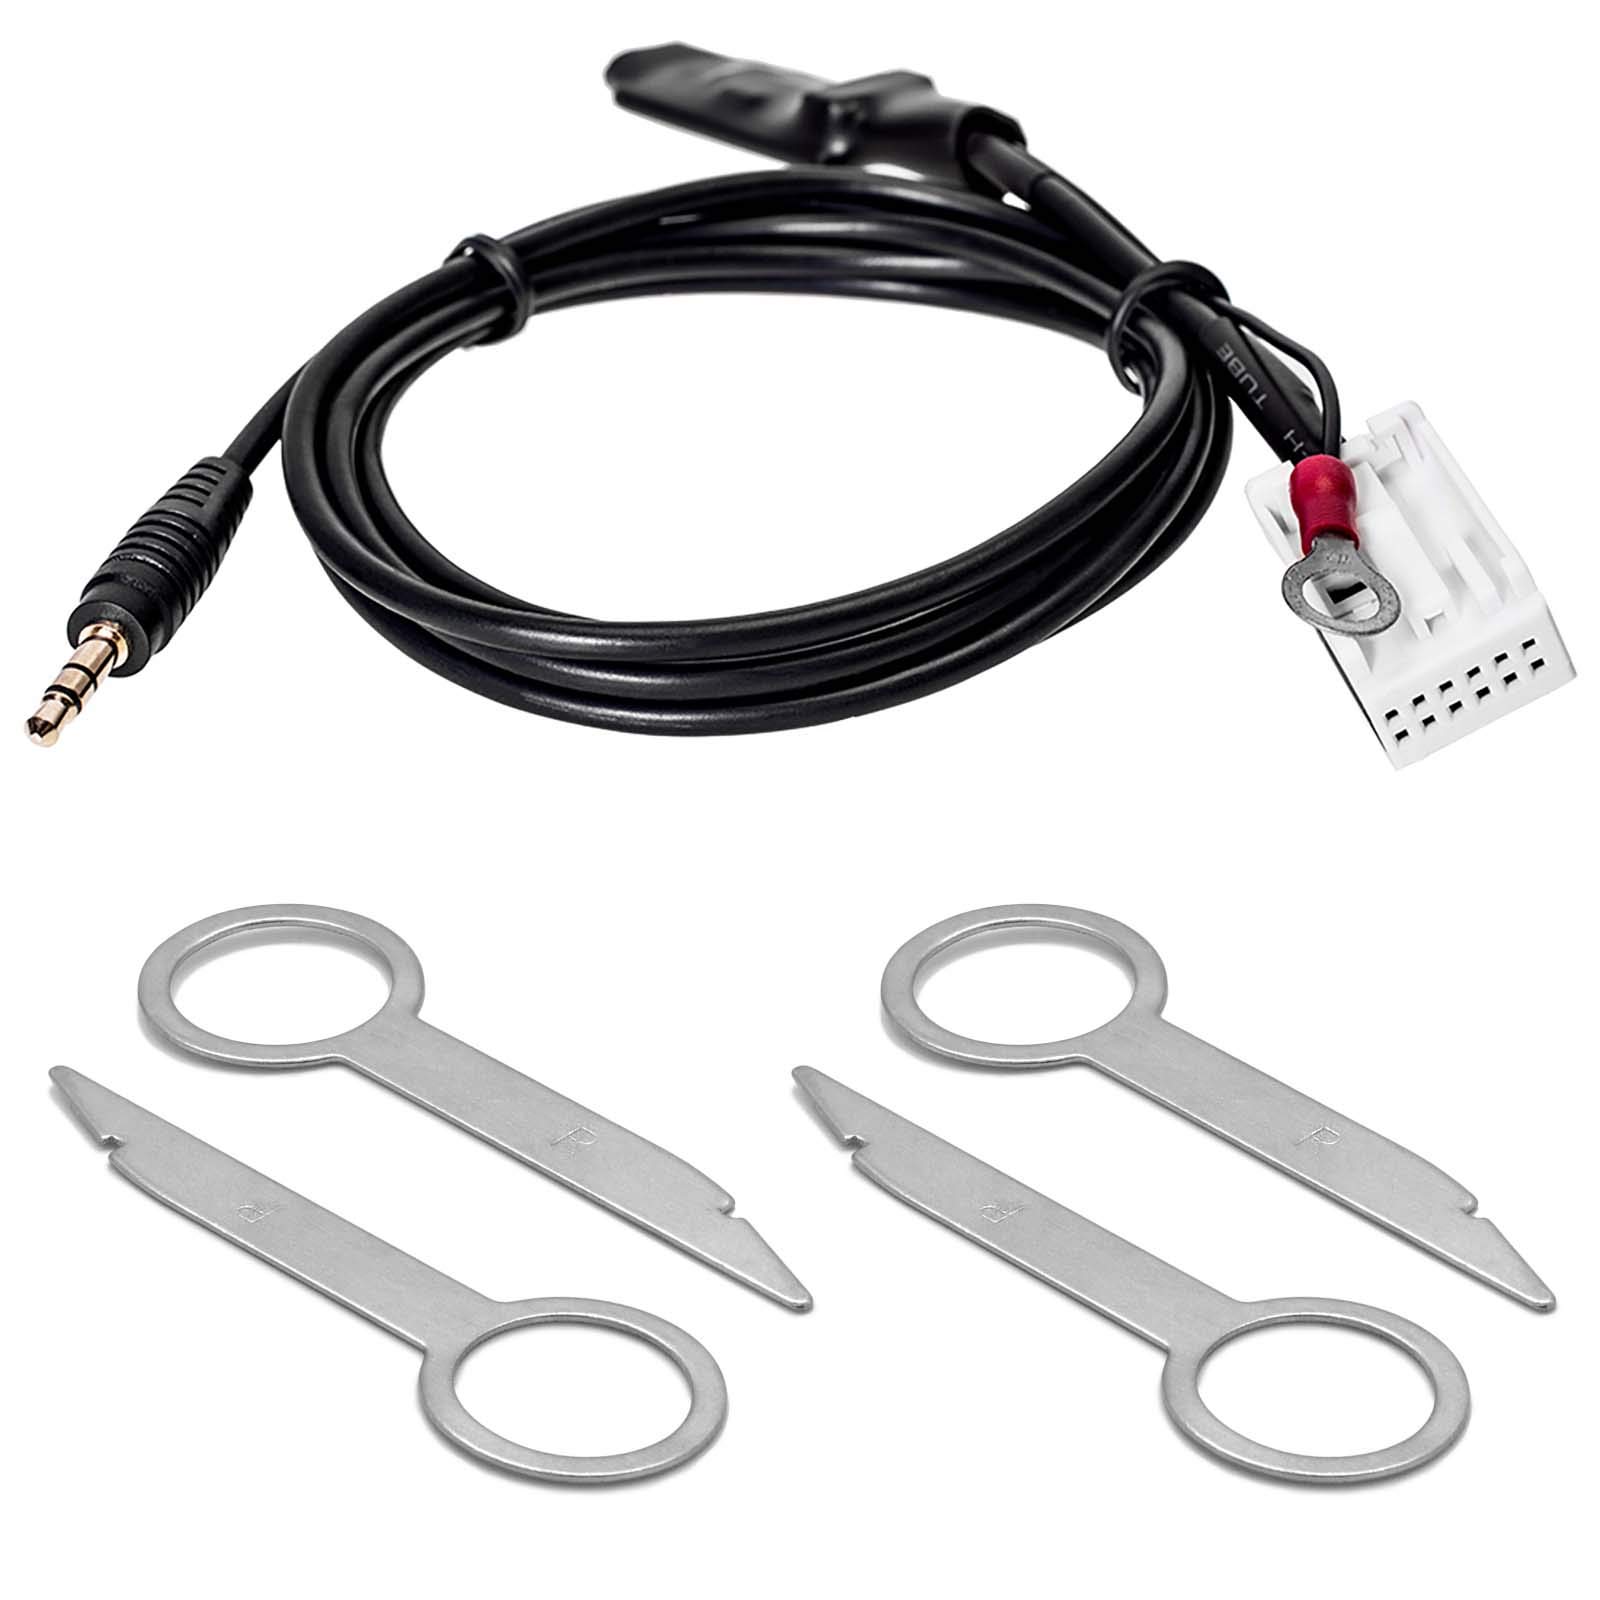 Set Entriegelung Bügel & AUX Interface Adapter Kabel